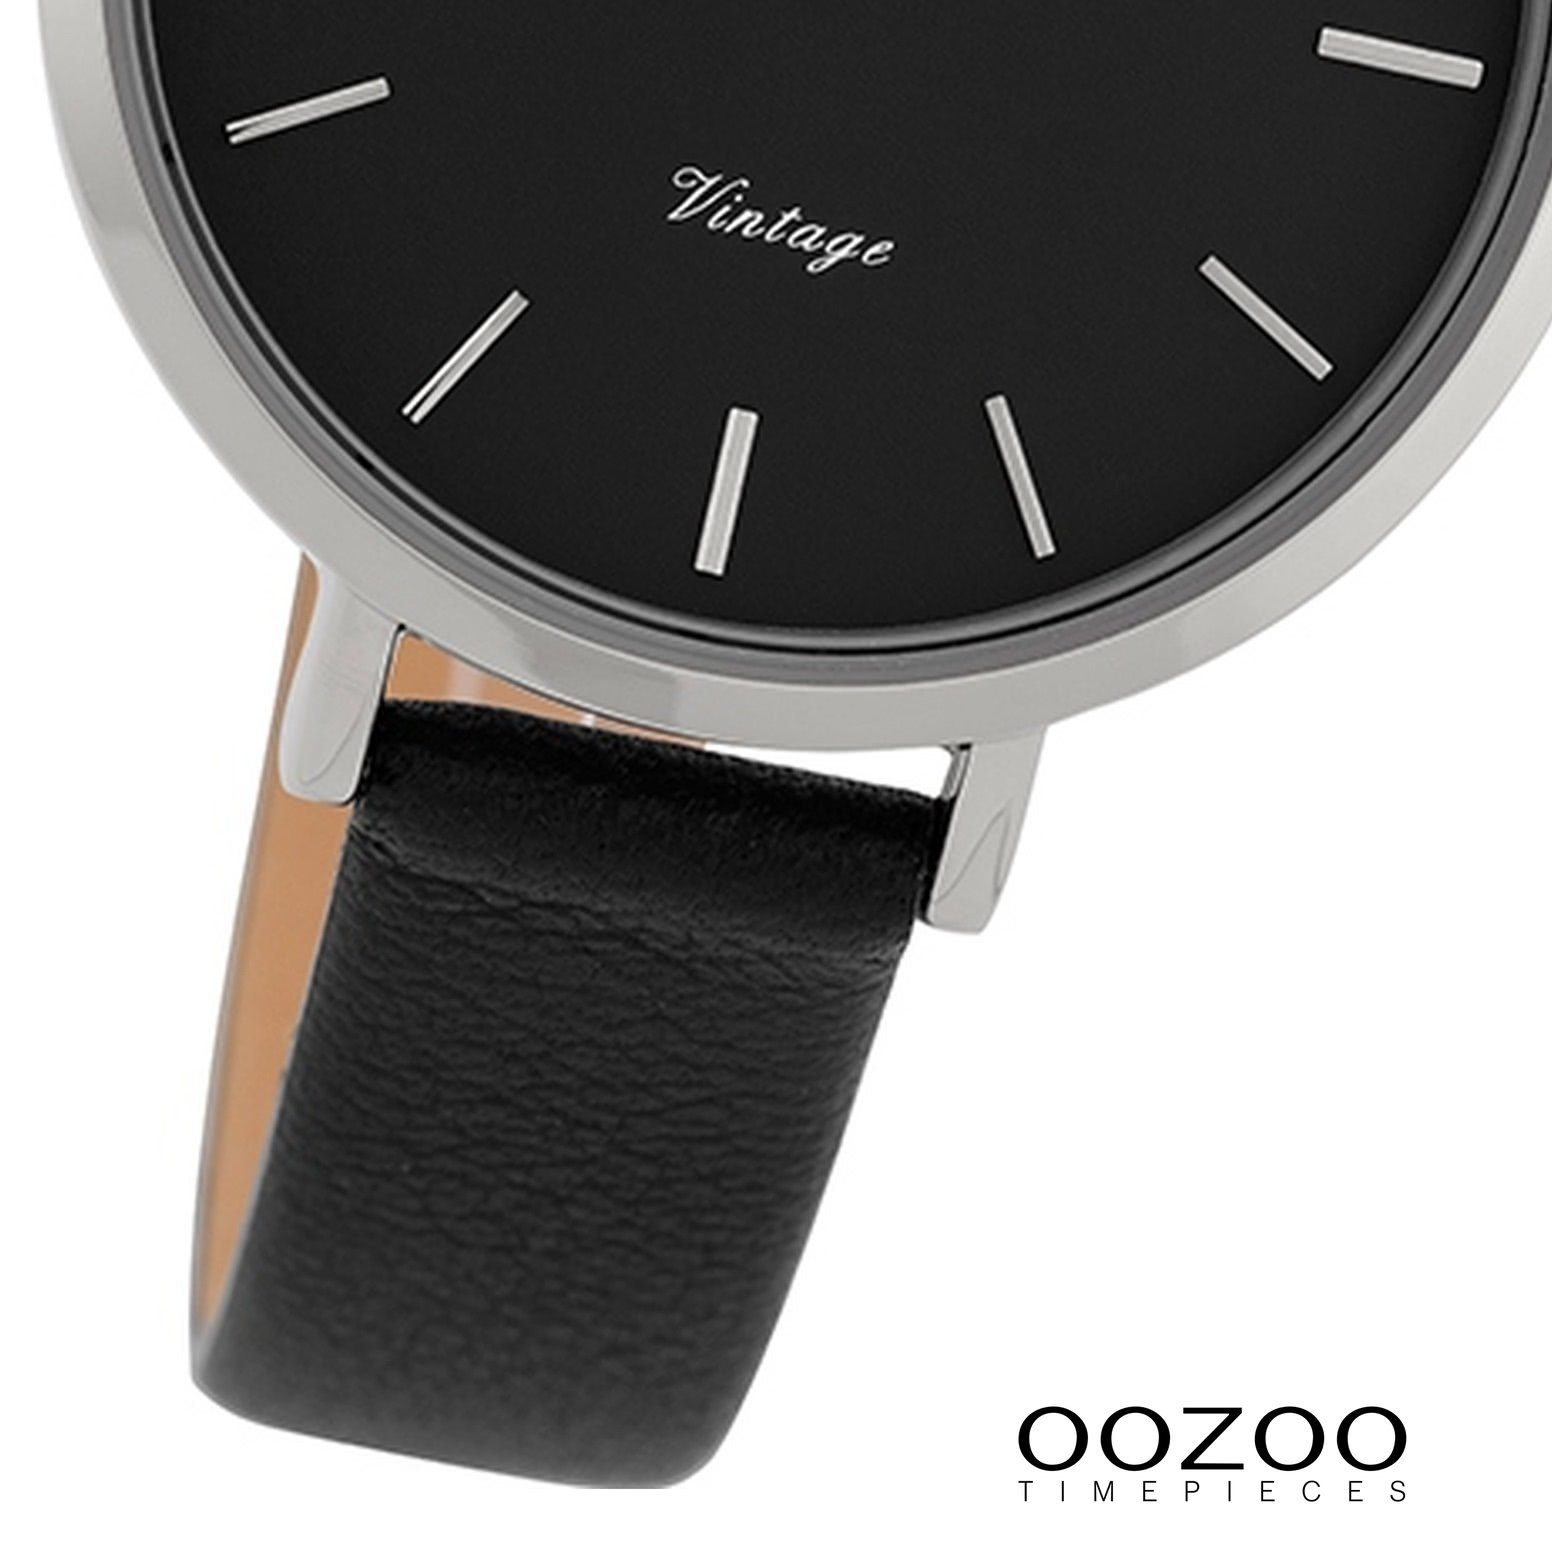 (ca. Fashion-Style OOZOO Quarzuhr Damen 34mm) schwarz, Oozoo Armbanduhr mittel Damenuhr rund, Lederarmband,